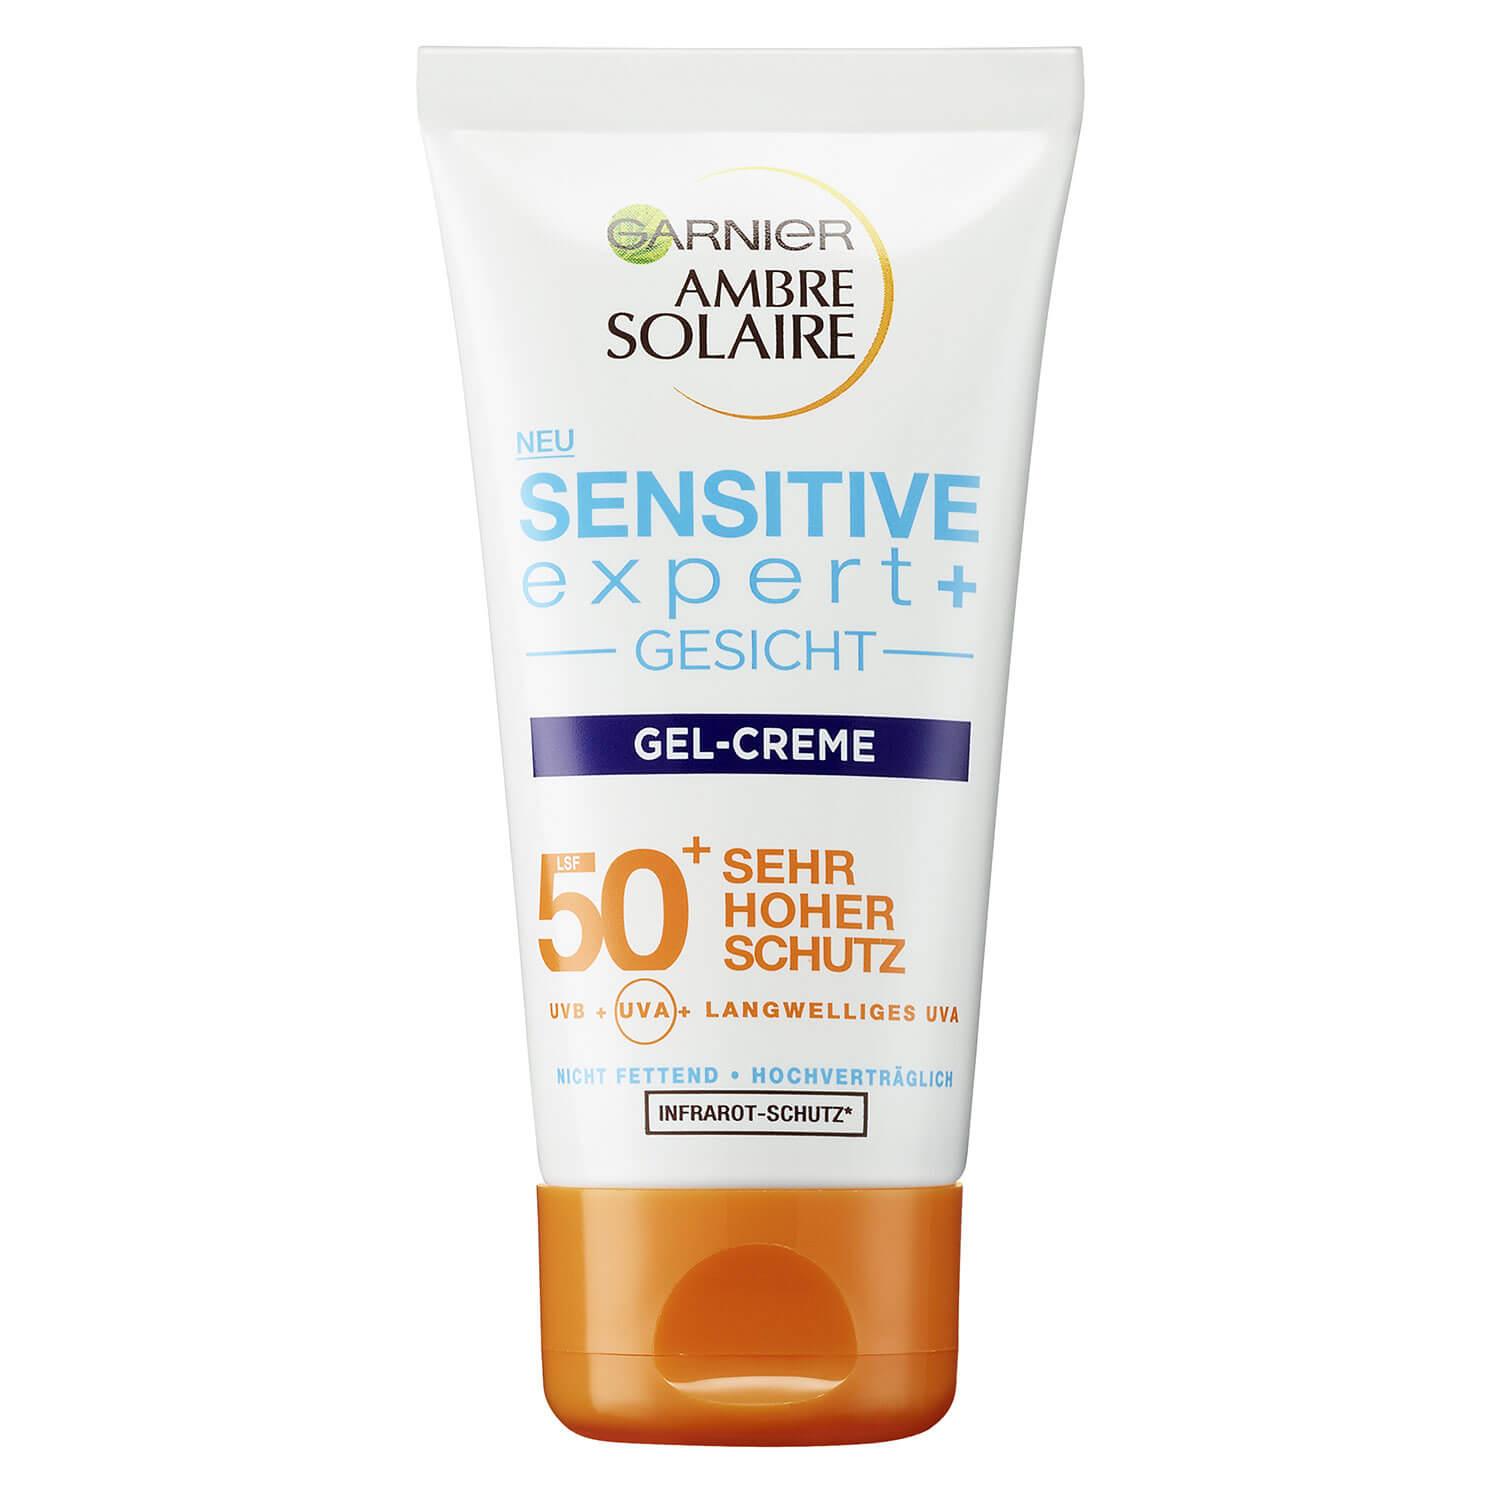 Ambre Solaire - Sensitive expert+ Gesicht Gel-Creme LSF50+